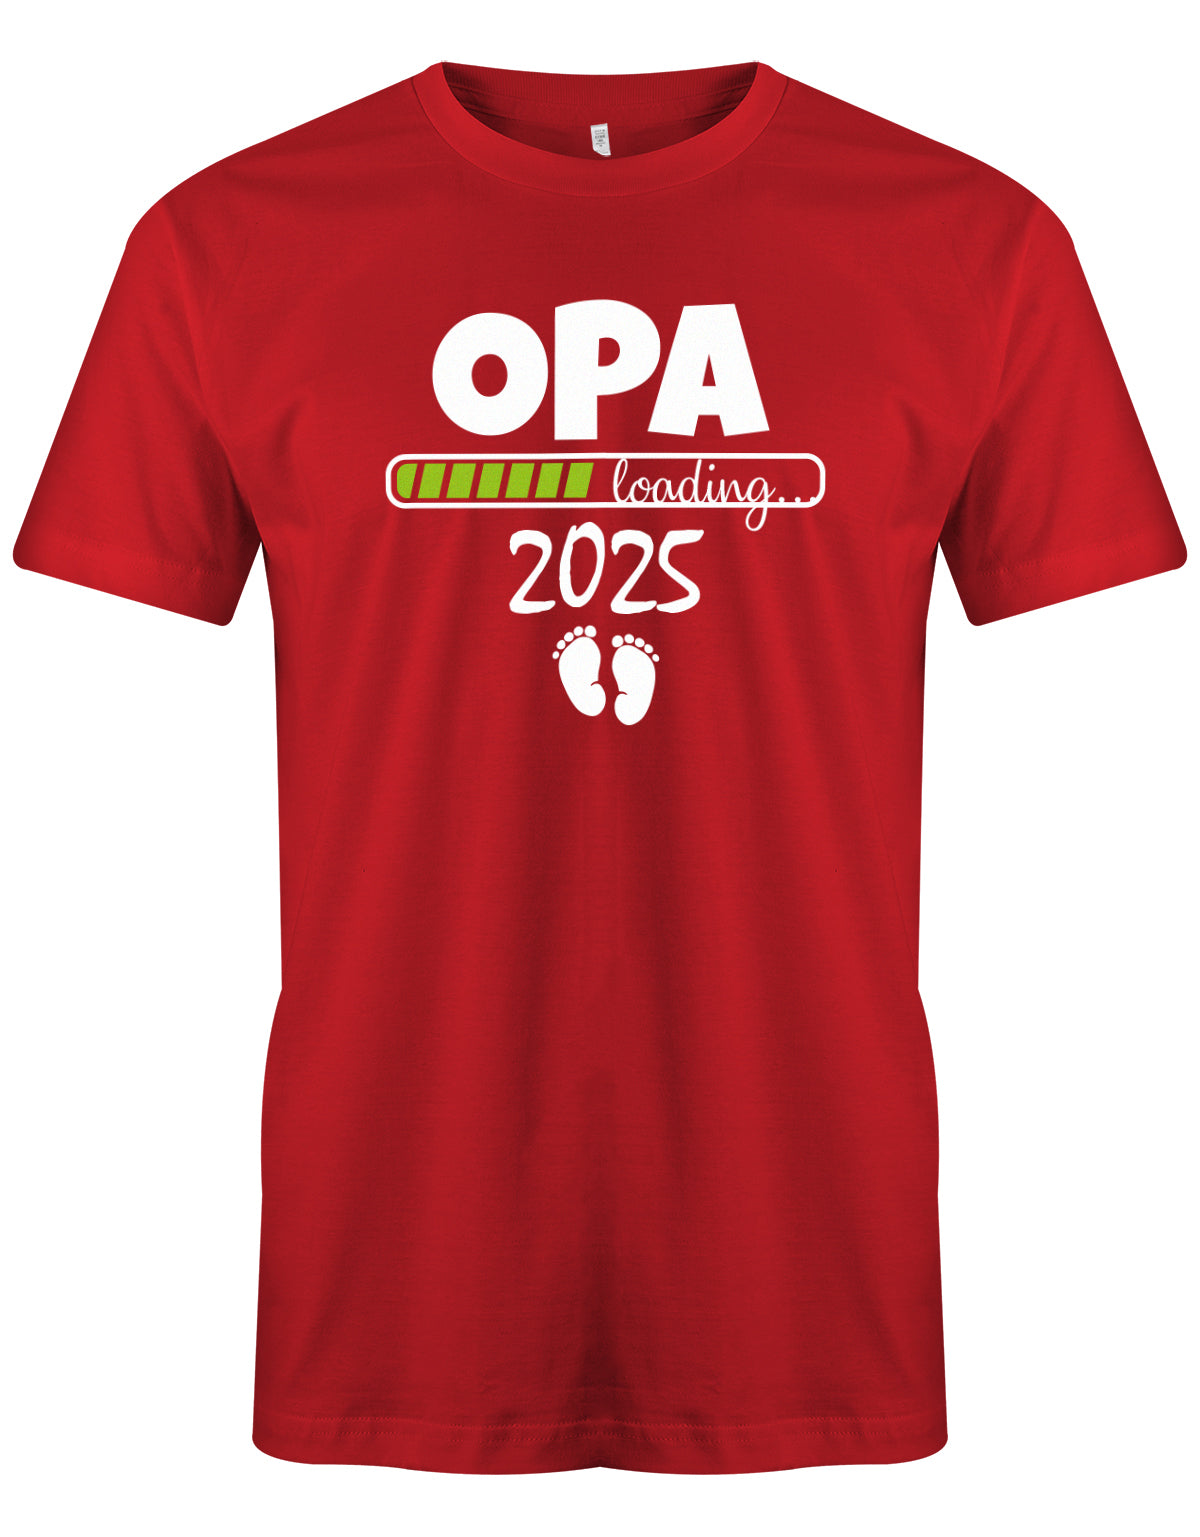 Opa T-Shirt Spruch für werdenden Opa - Opa Loading 2025 Balken lädt. Fußabdrücke Baby. Rot